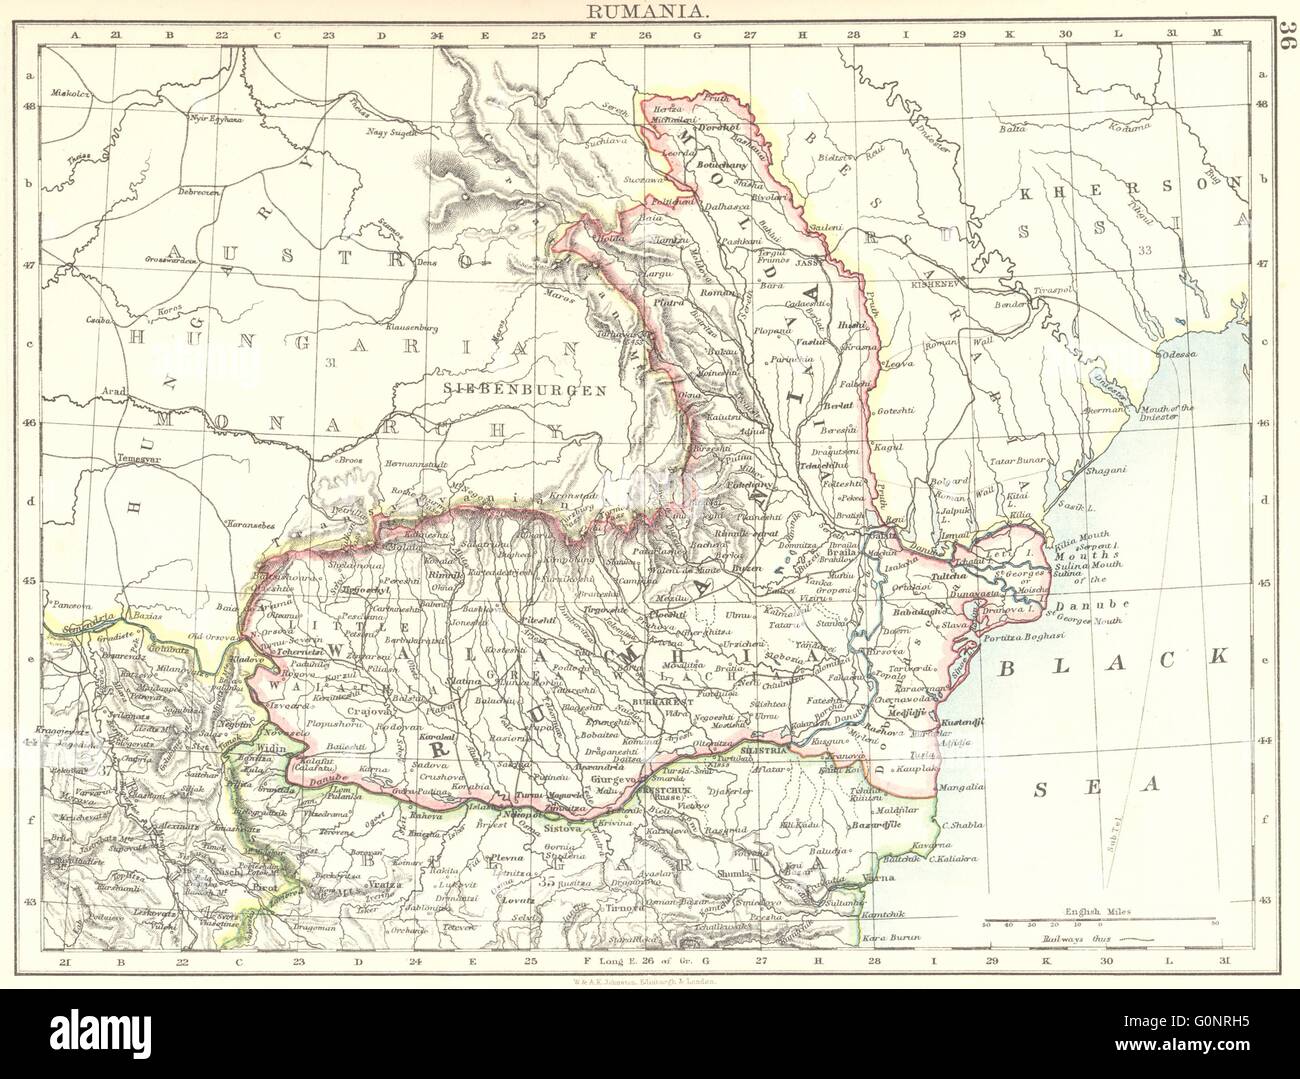 RUMANIA. Romania Wallachia Moldavia Moldova. Railways. JOHNSTON, 1899 old  map Stock Photo - Alamy